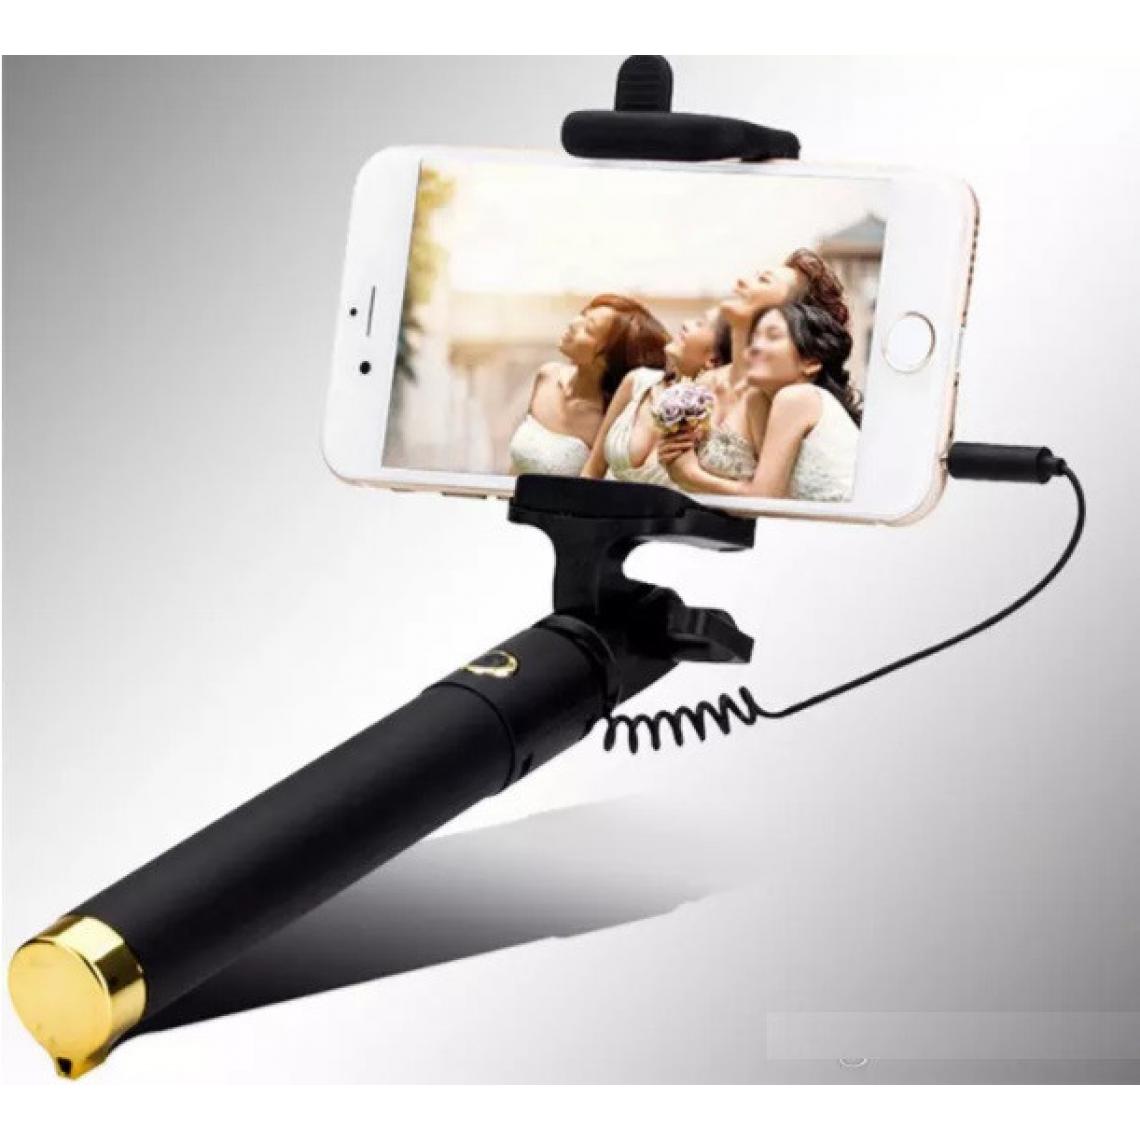 Shot - Perche Selfie Metal pour BLACKBERRY KEY2 LE Smartphone avec Cable Jack Selfie Stick Android IOS Reglable Bouton Photo (OR) - Autres accessoires smartphone